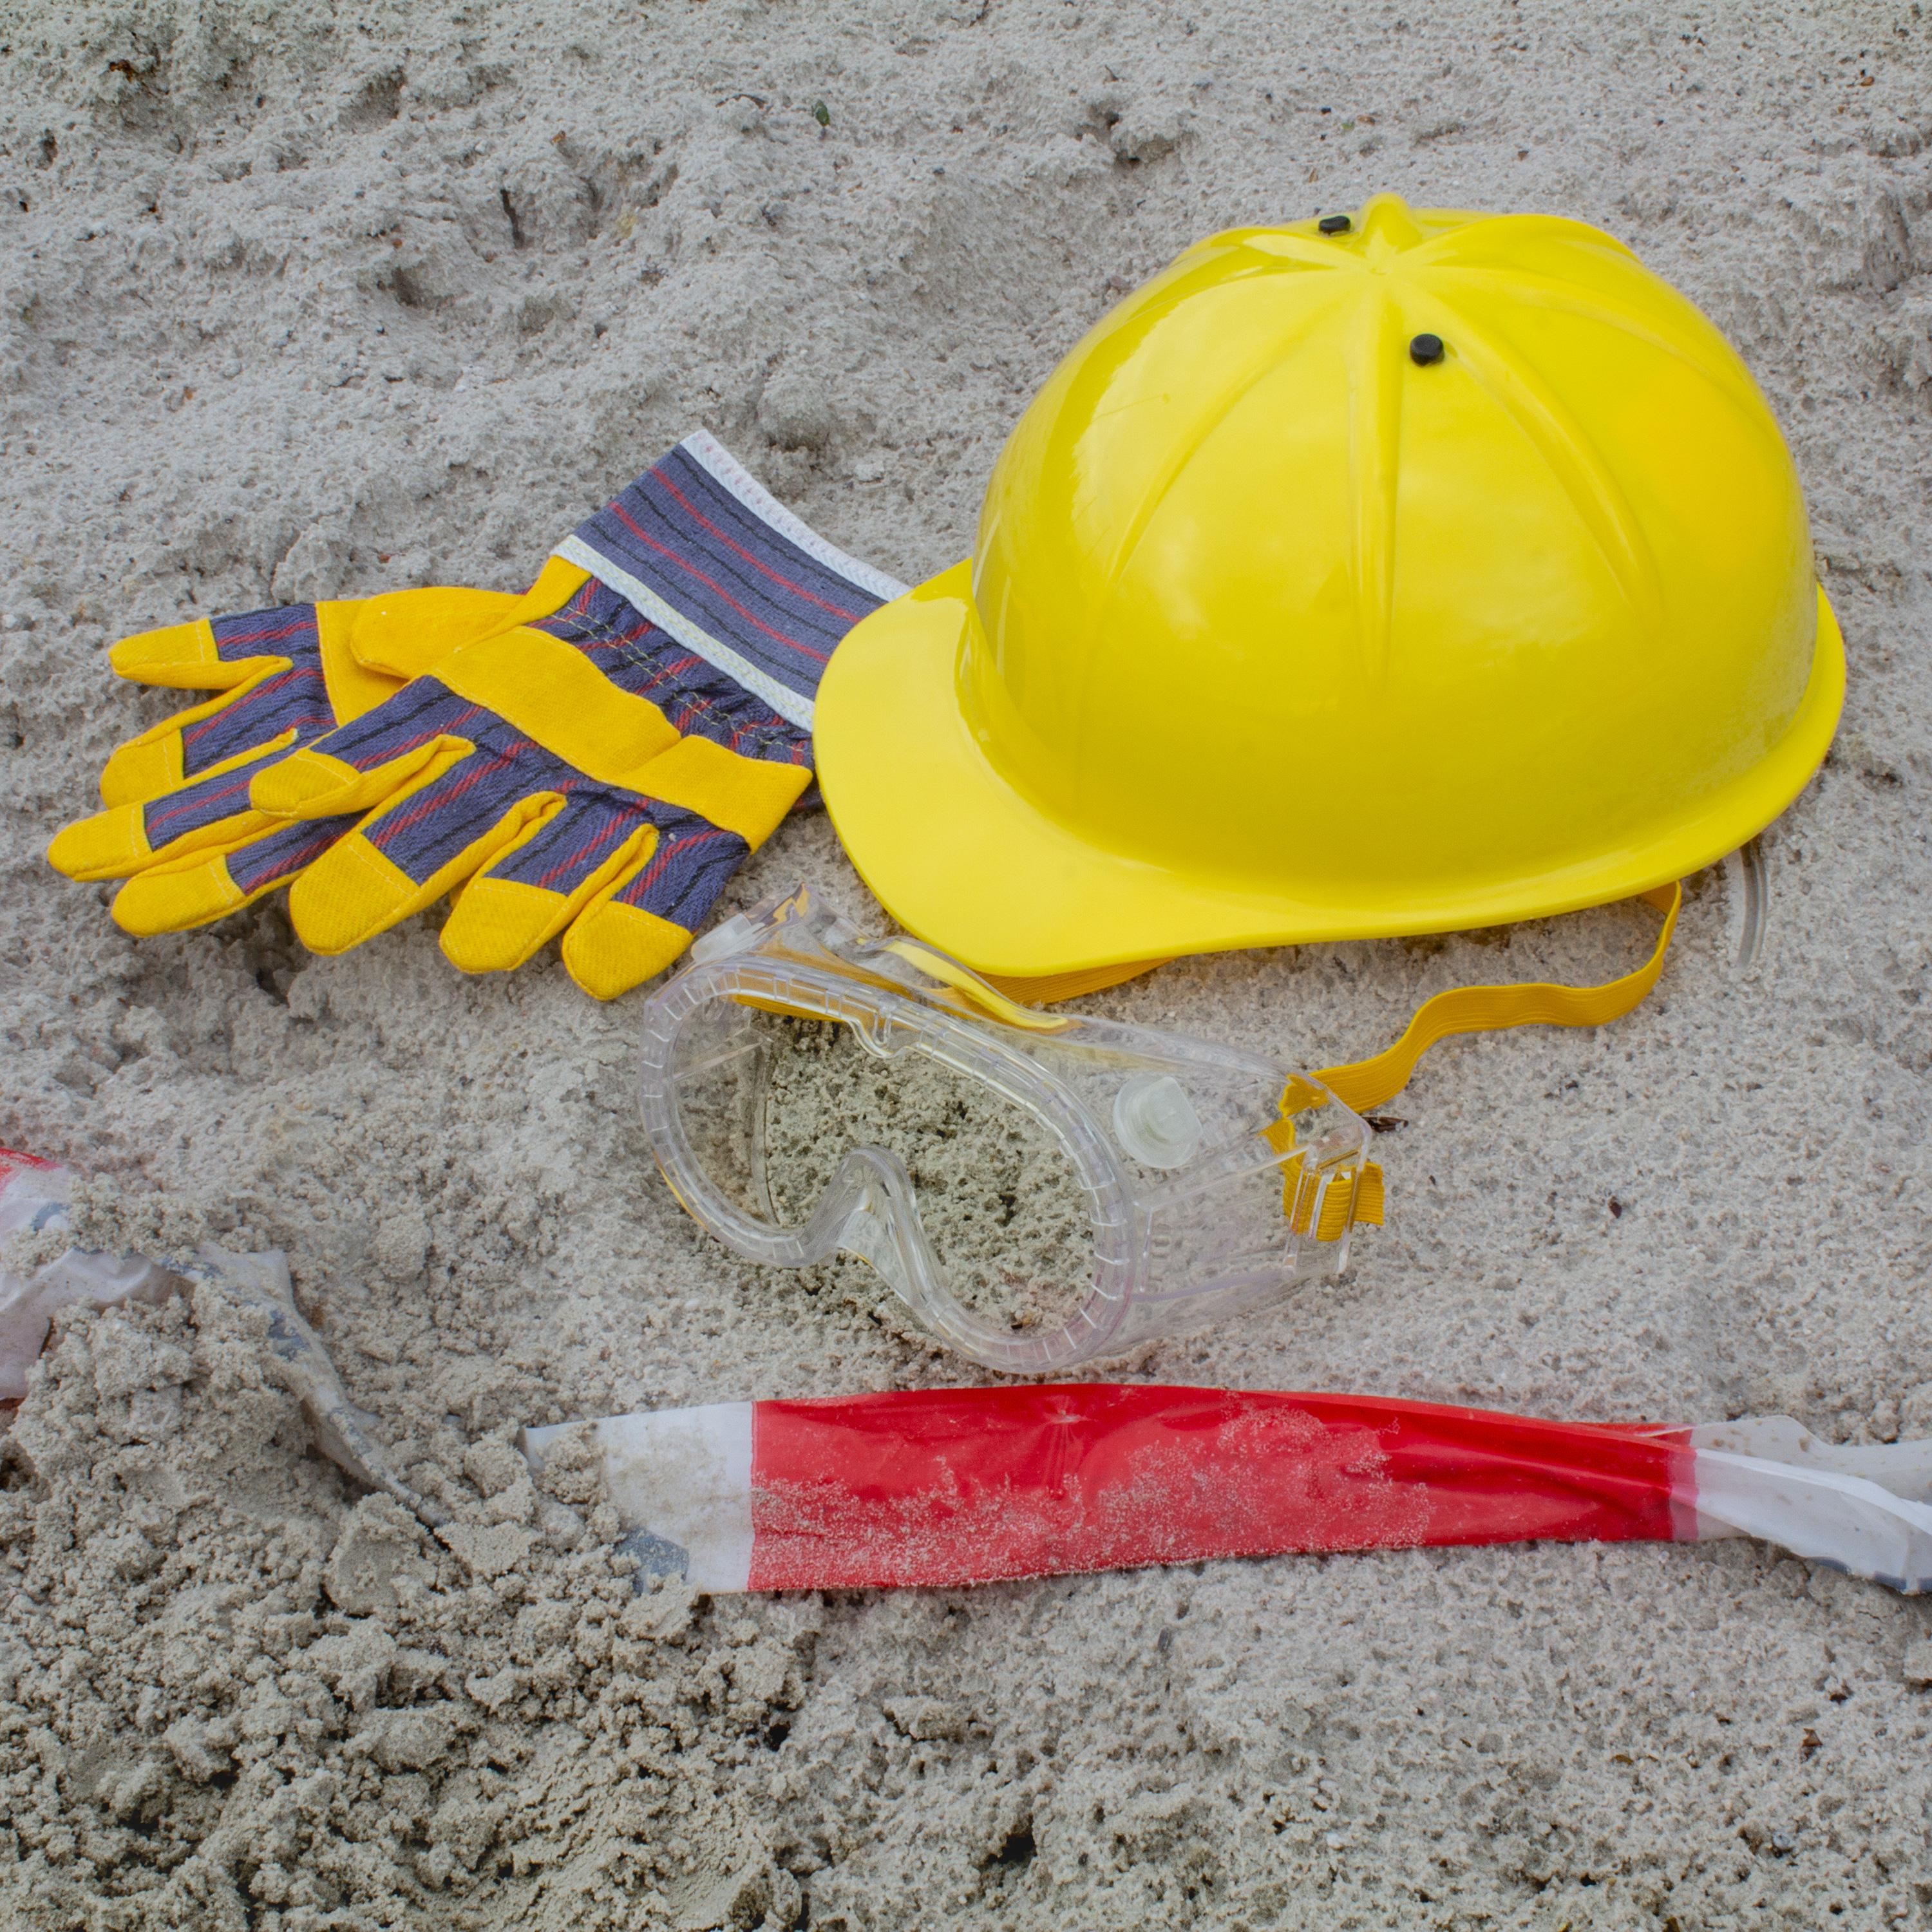 Bau Set Bauarbeiterset Säge Handschuhe Schutzbrille Helm Spielzeug für Kinder 